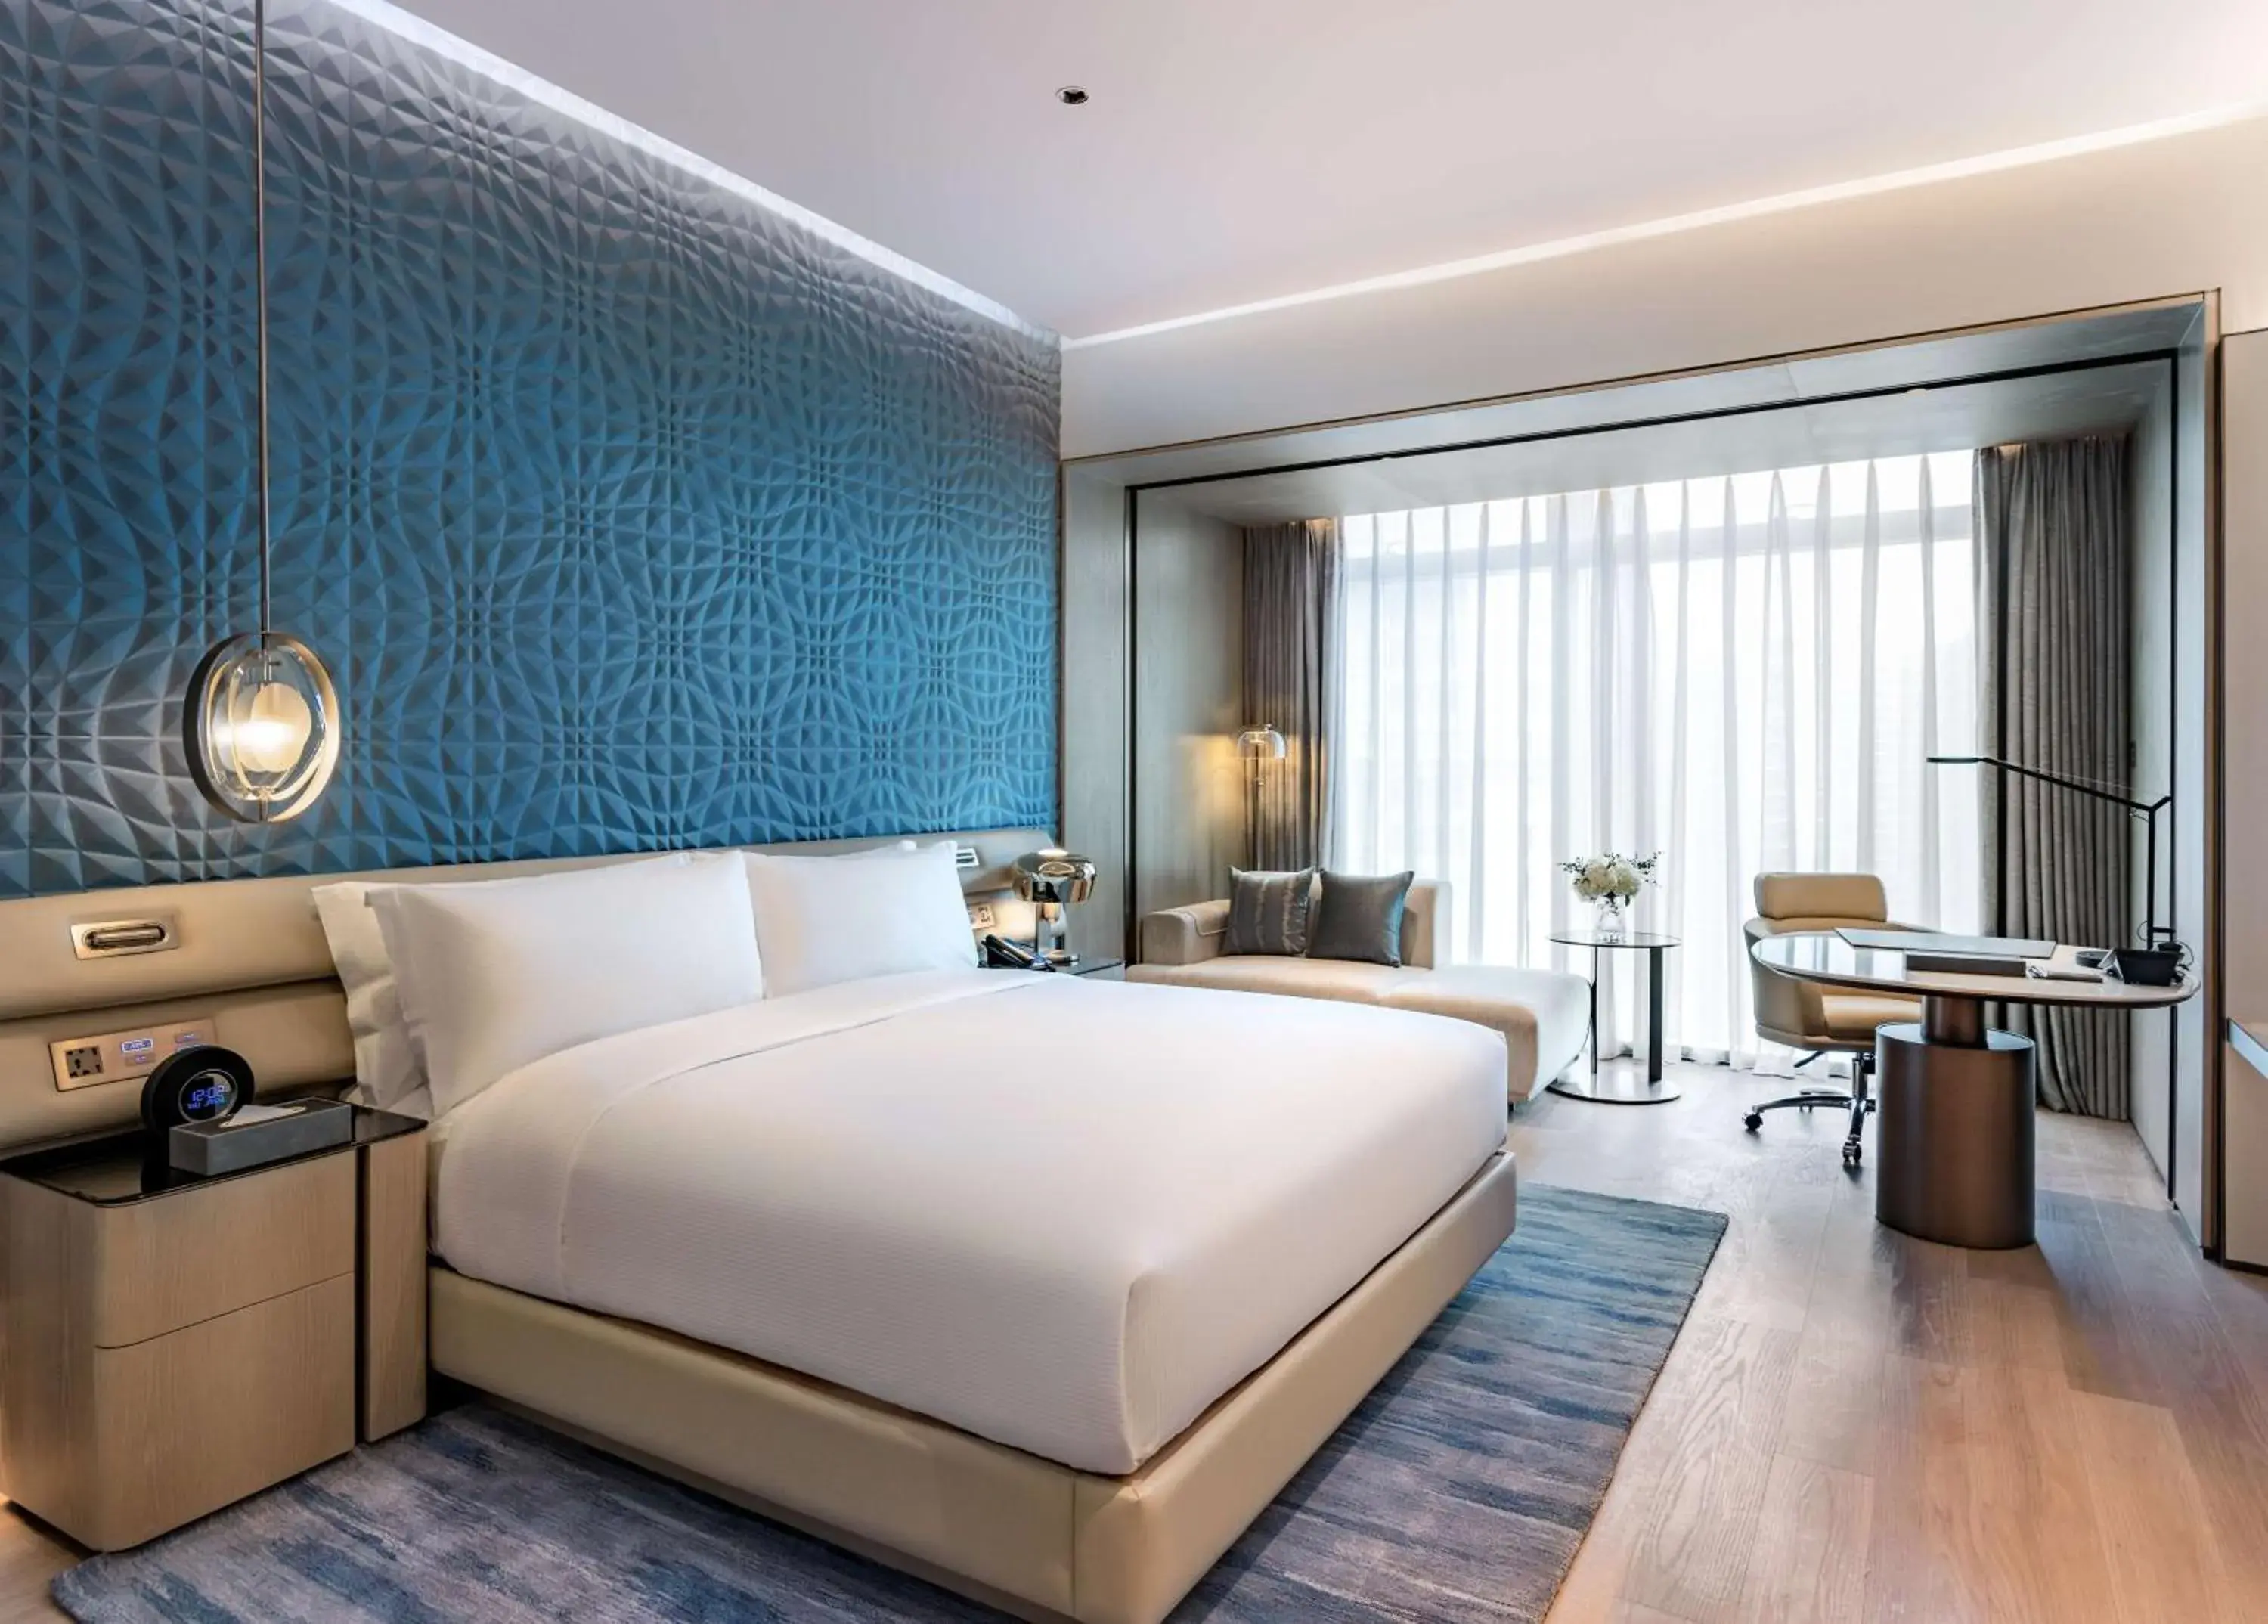 Bedroom in Hilton Shenzhen World Exhibition & Convention Center